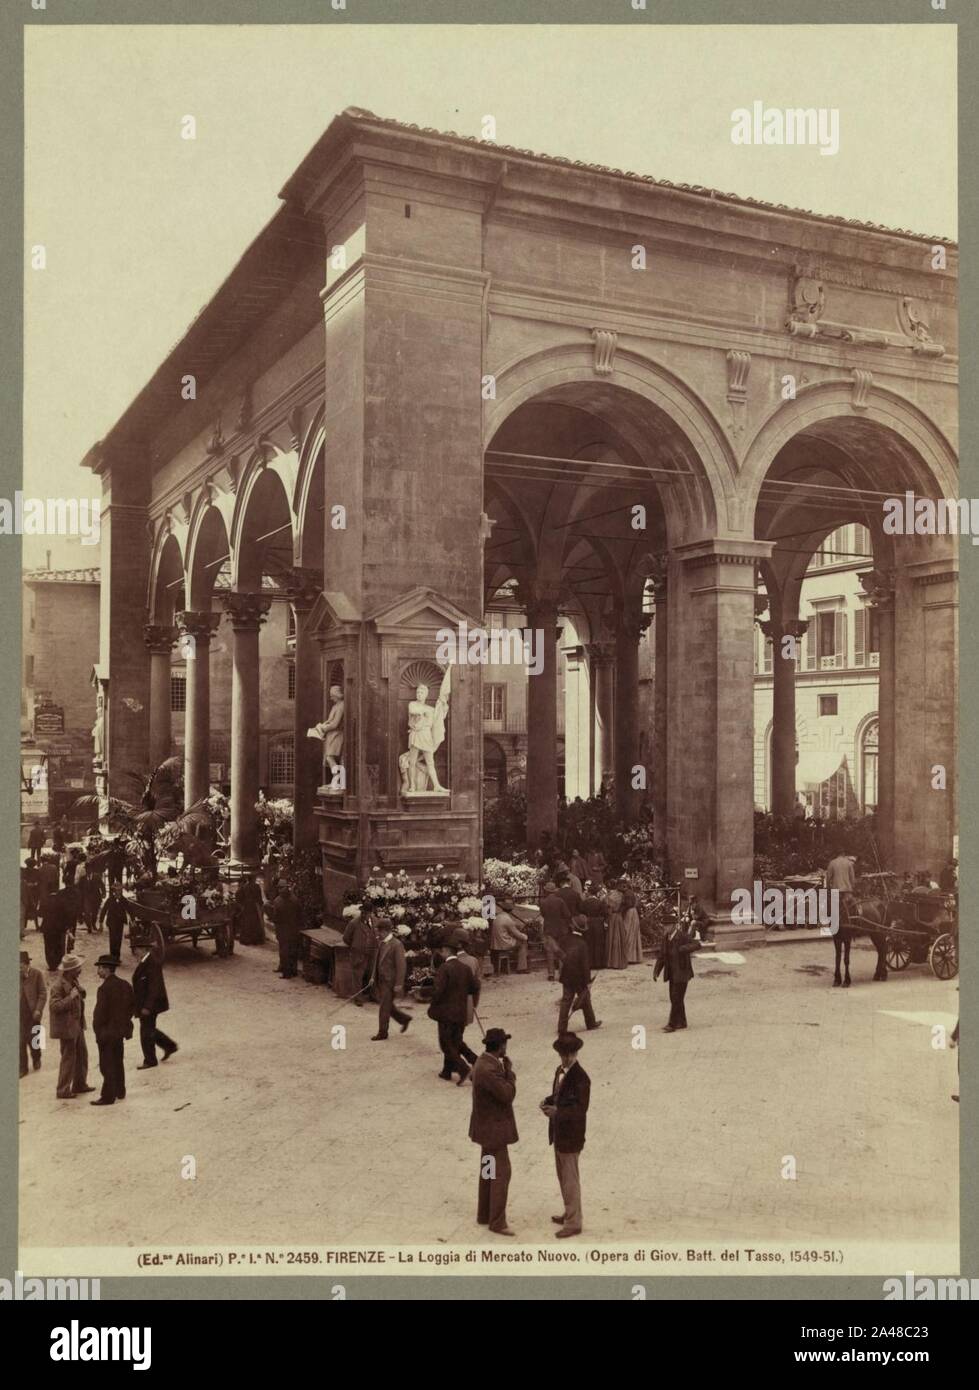 Firenze - la loggia di Mercato Nuovo (Opera di Giov. Attt. del Tasso, 1549-51) - Ed. Alinari. Stock Photo